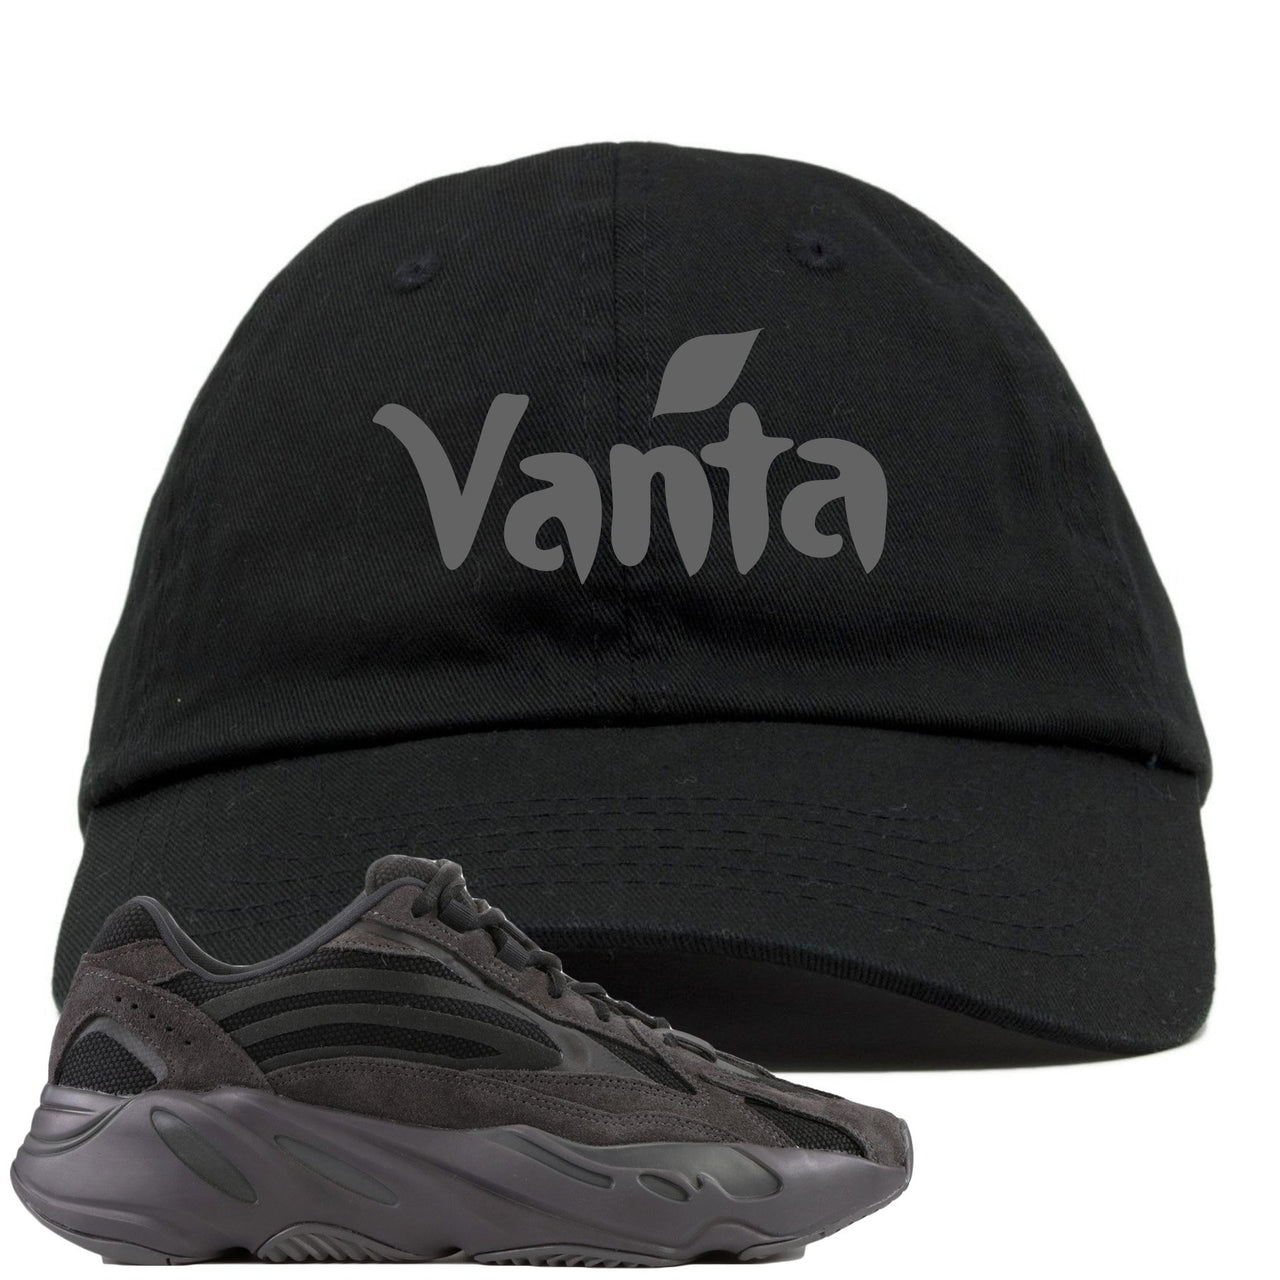 Vanta v2 700s Dad Hat | Vanta, Black